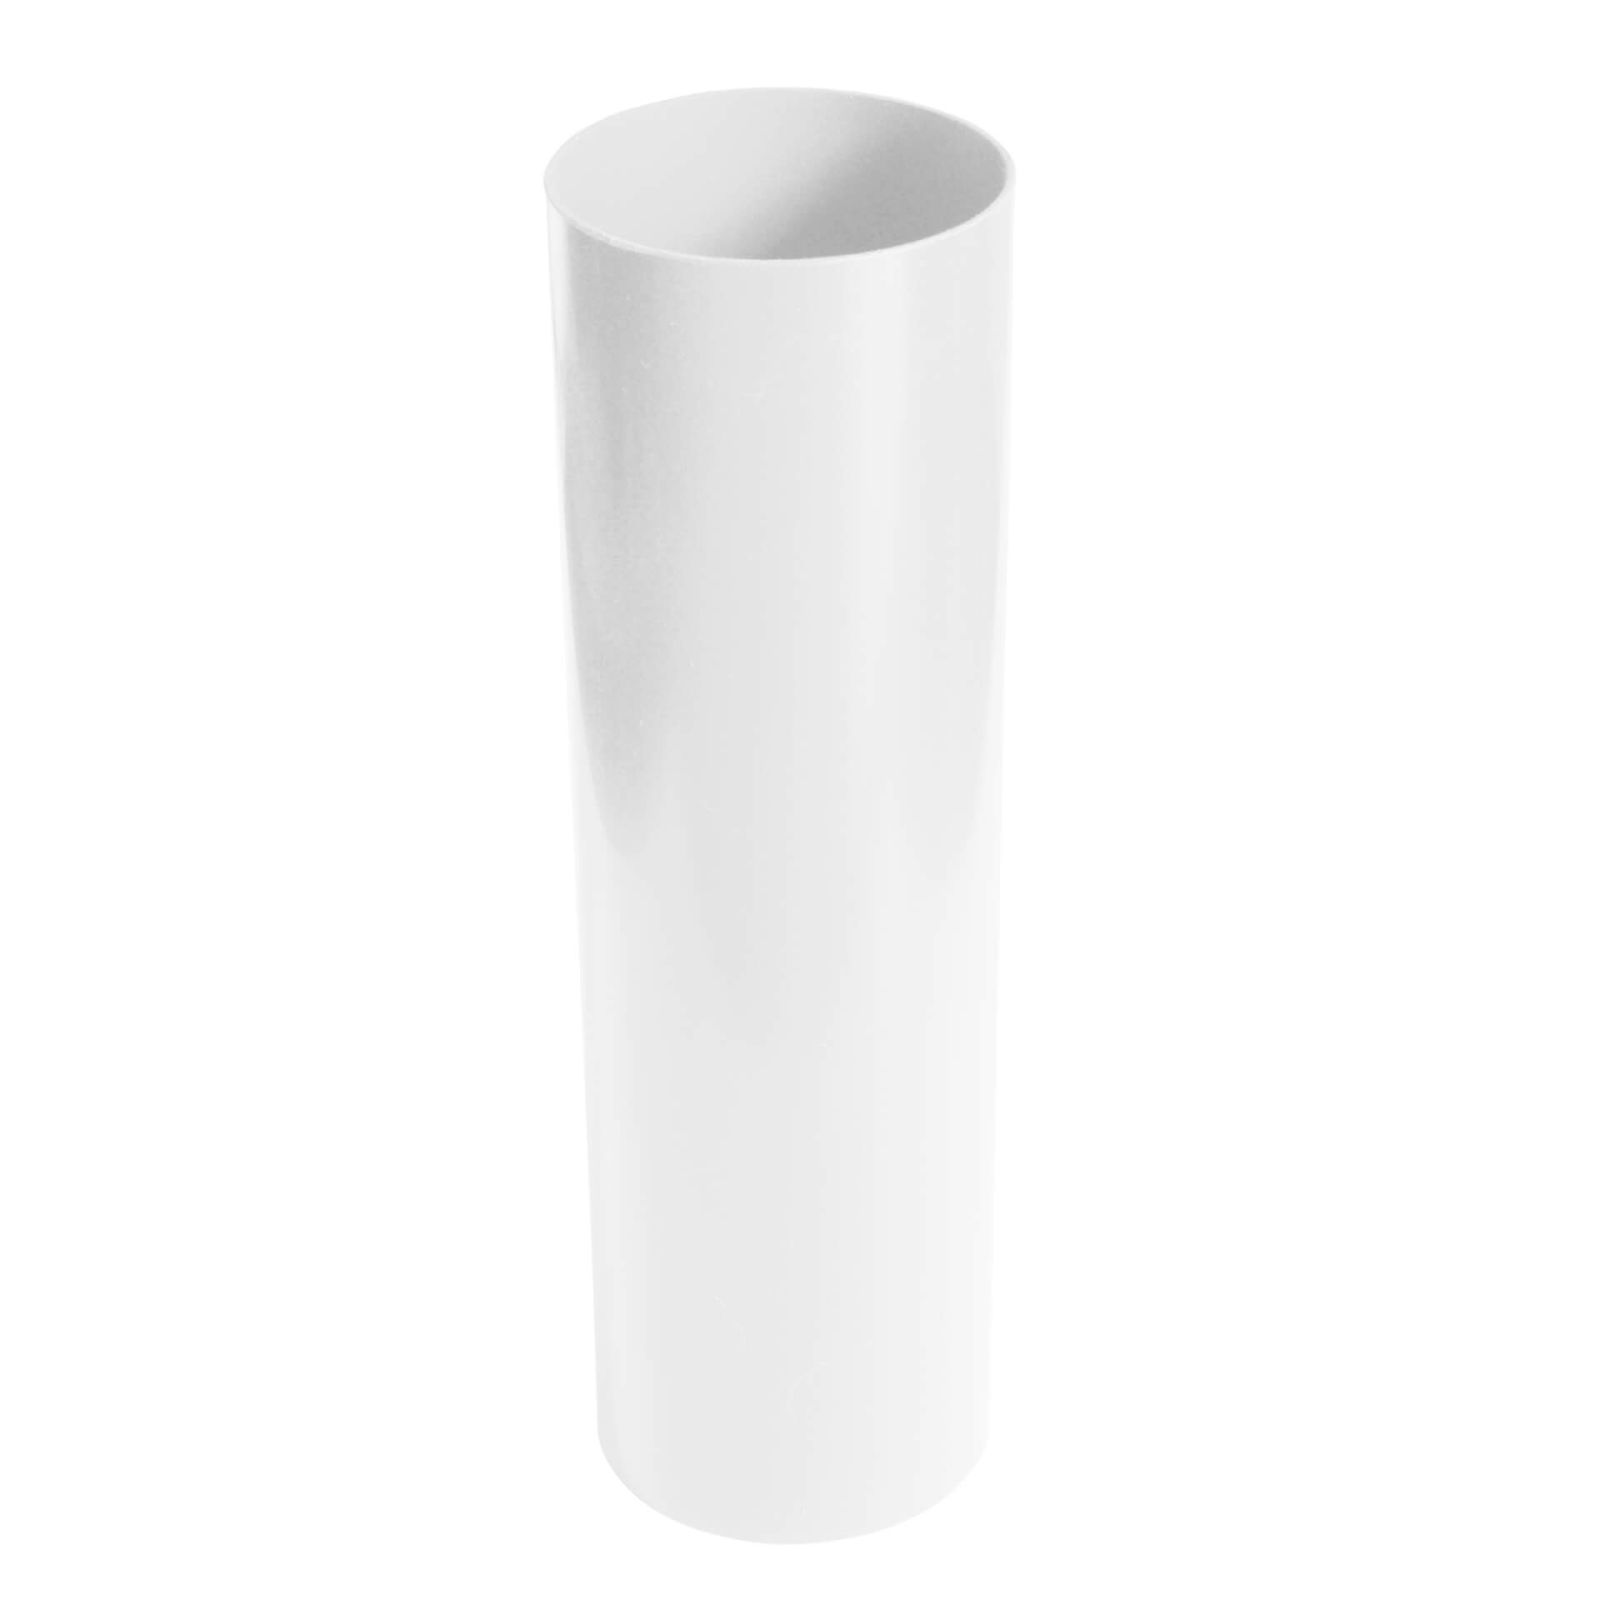 Kunststoff Dachrinnen Sparpaket 6 m | Ø 150/110 mm | Farbe Weiß #8